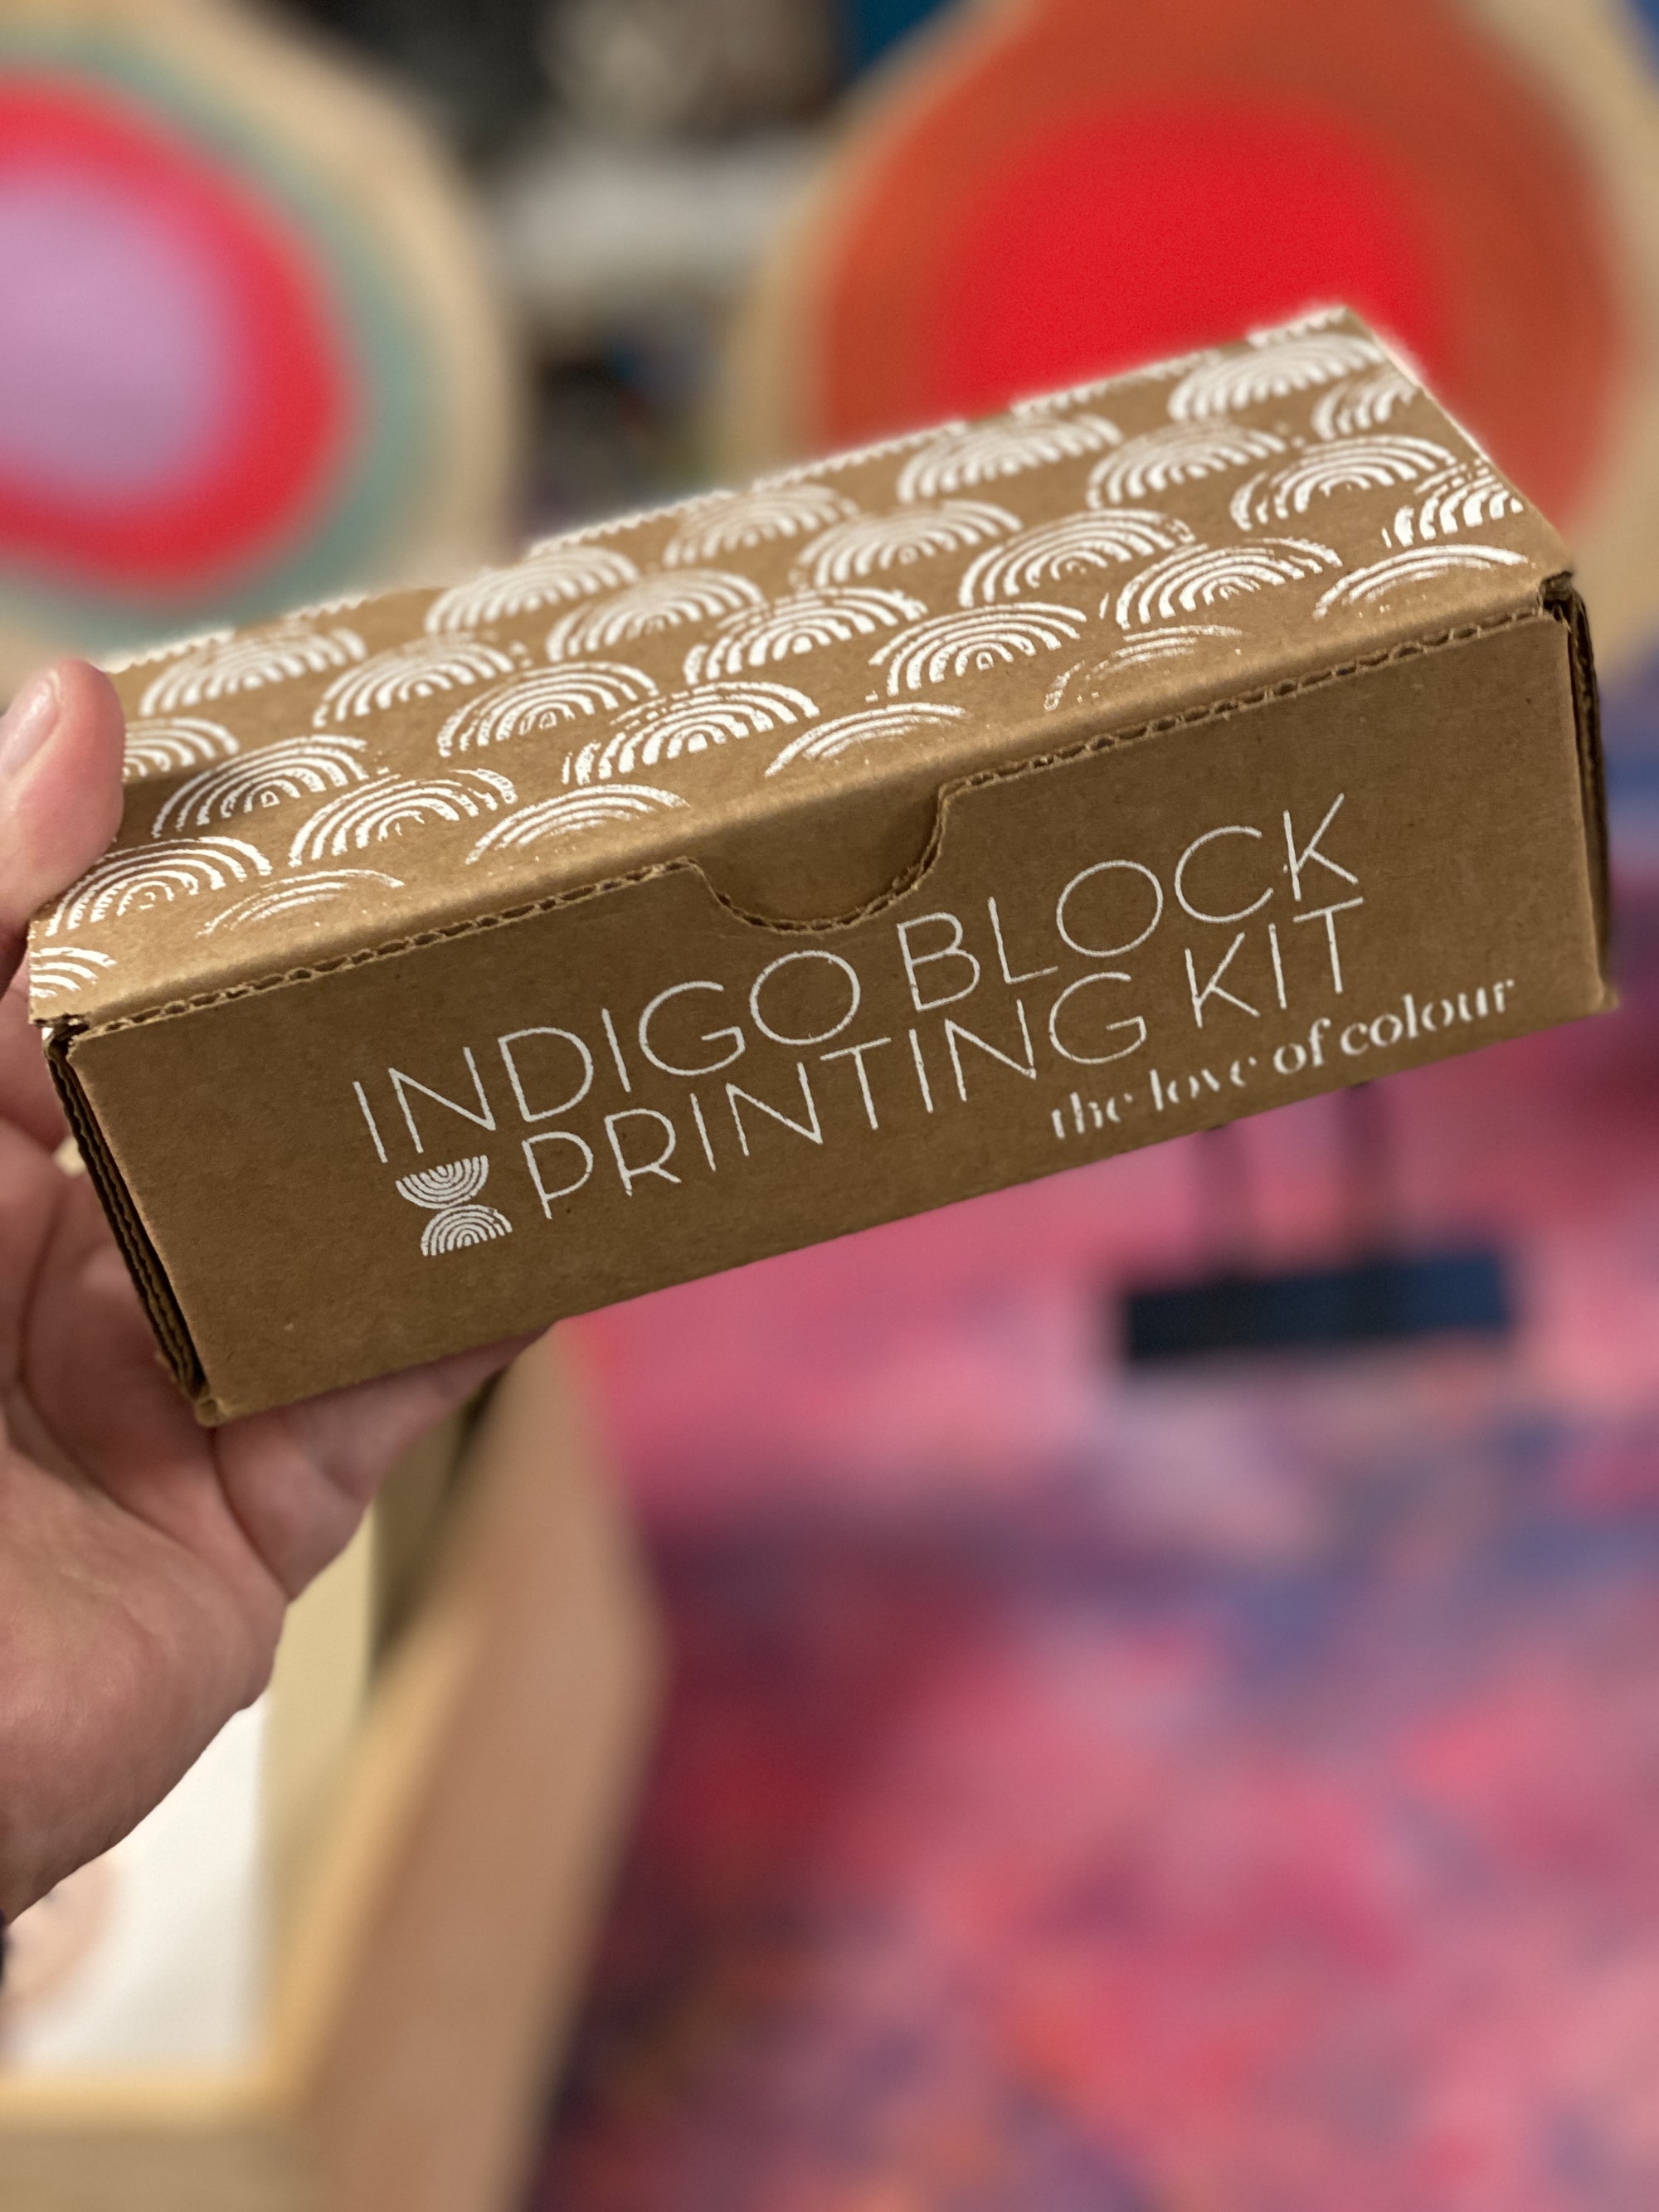 DIY - Dyeing - Indigo Block Printing Kit